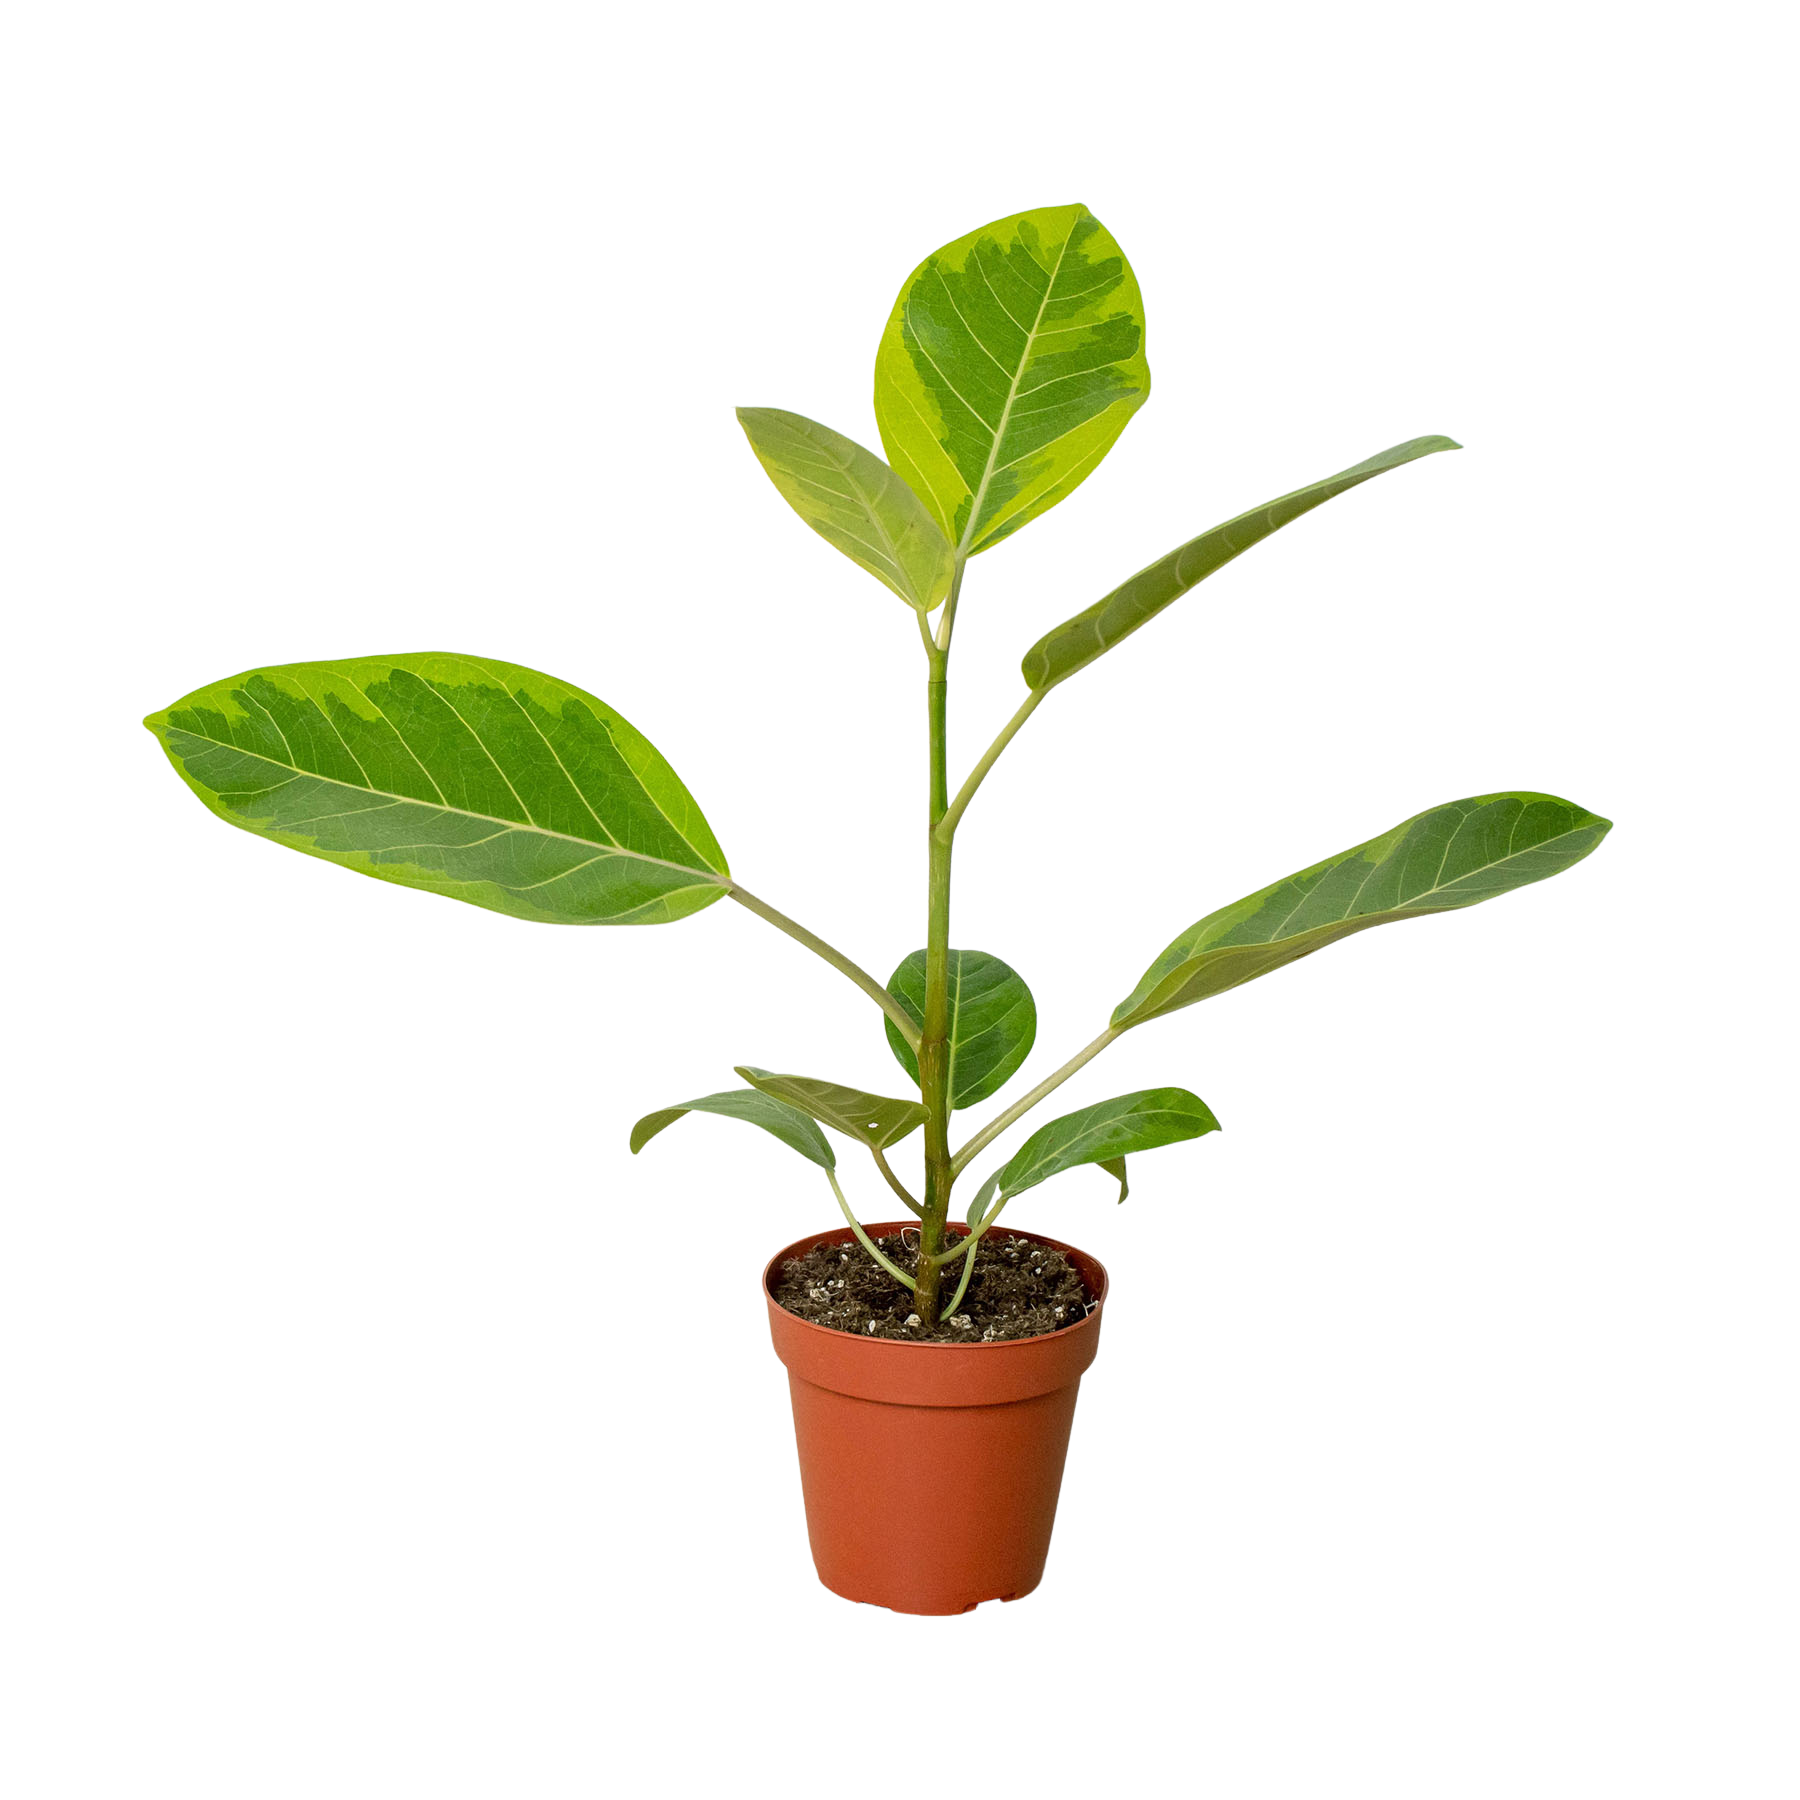 A small plant in a pot at a garden center.